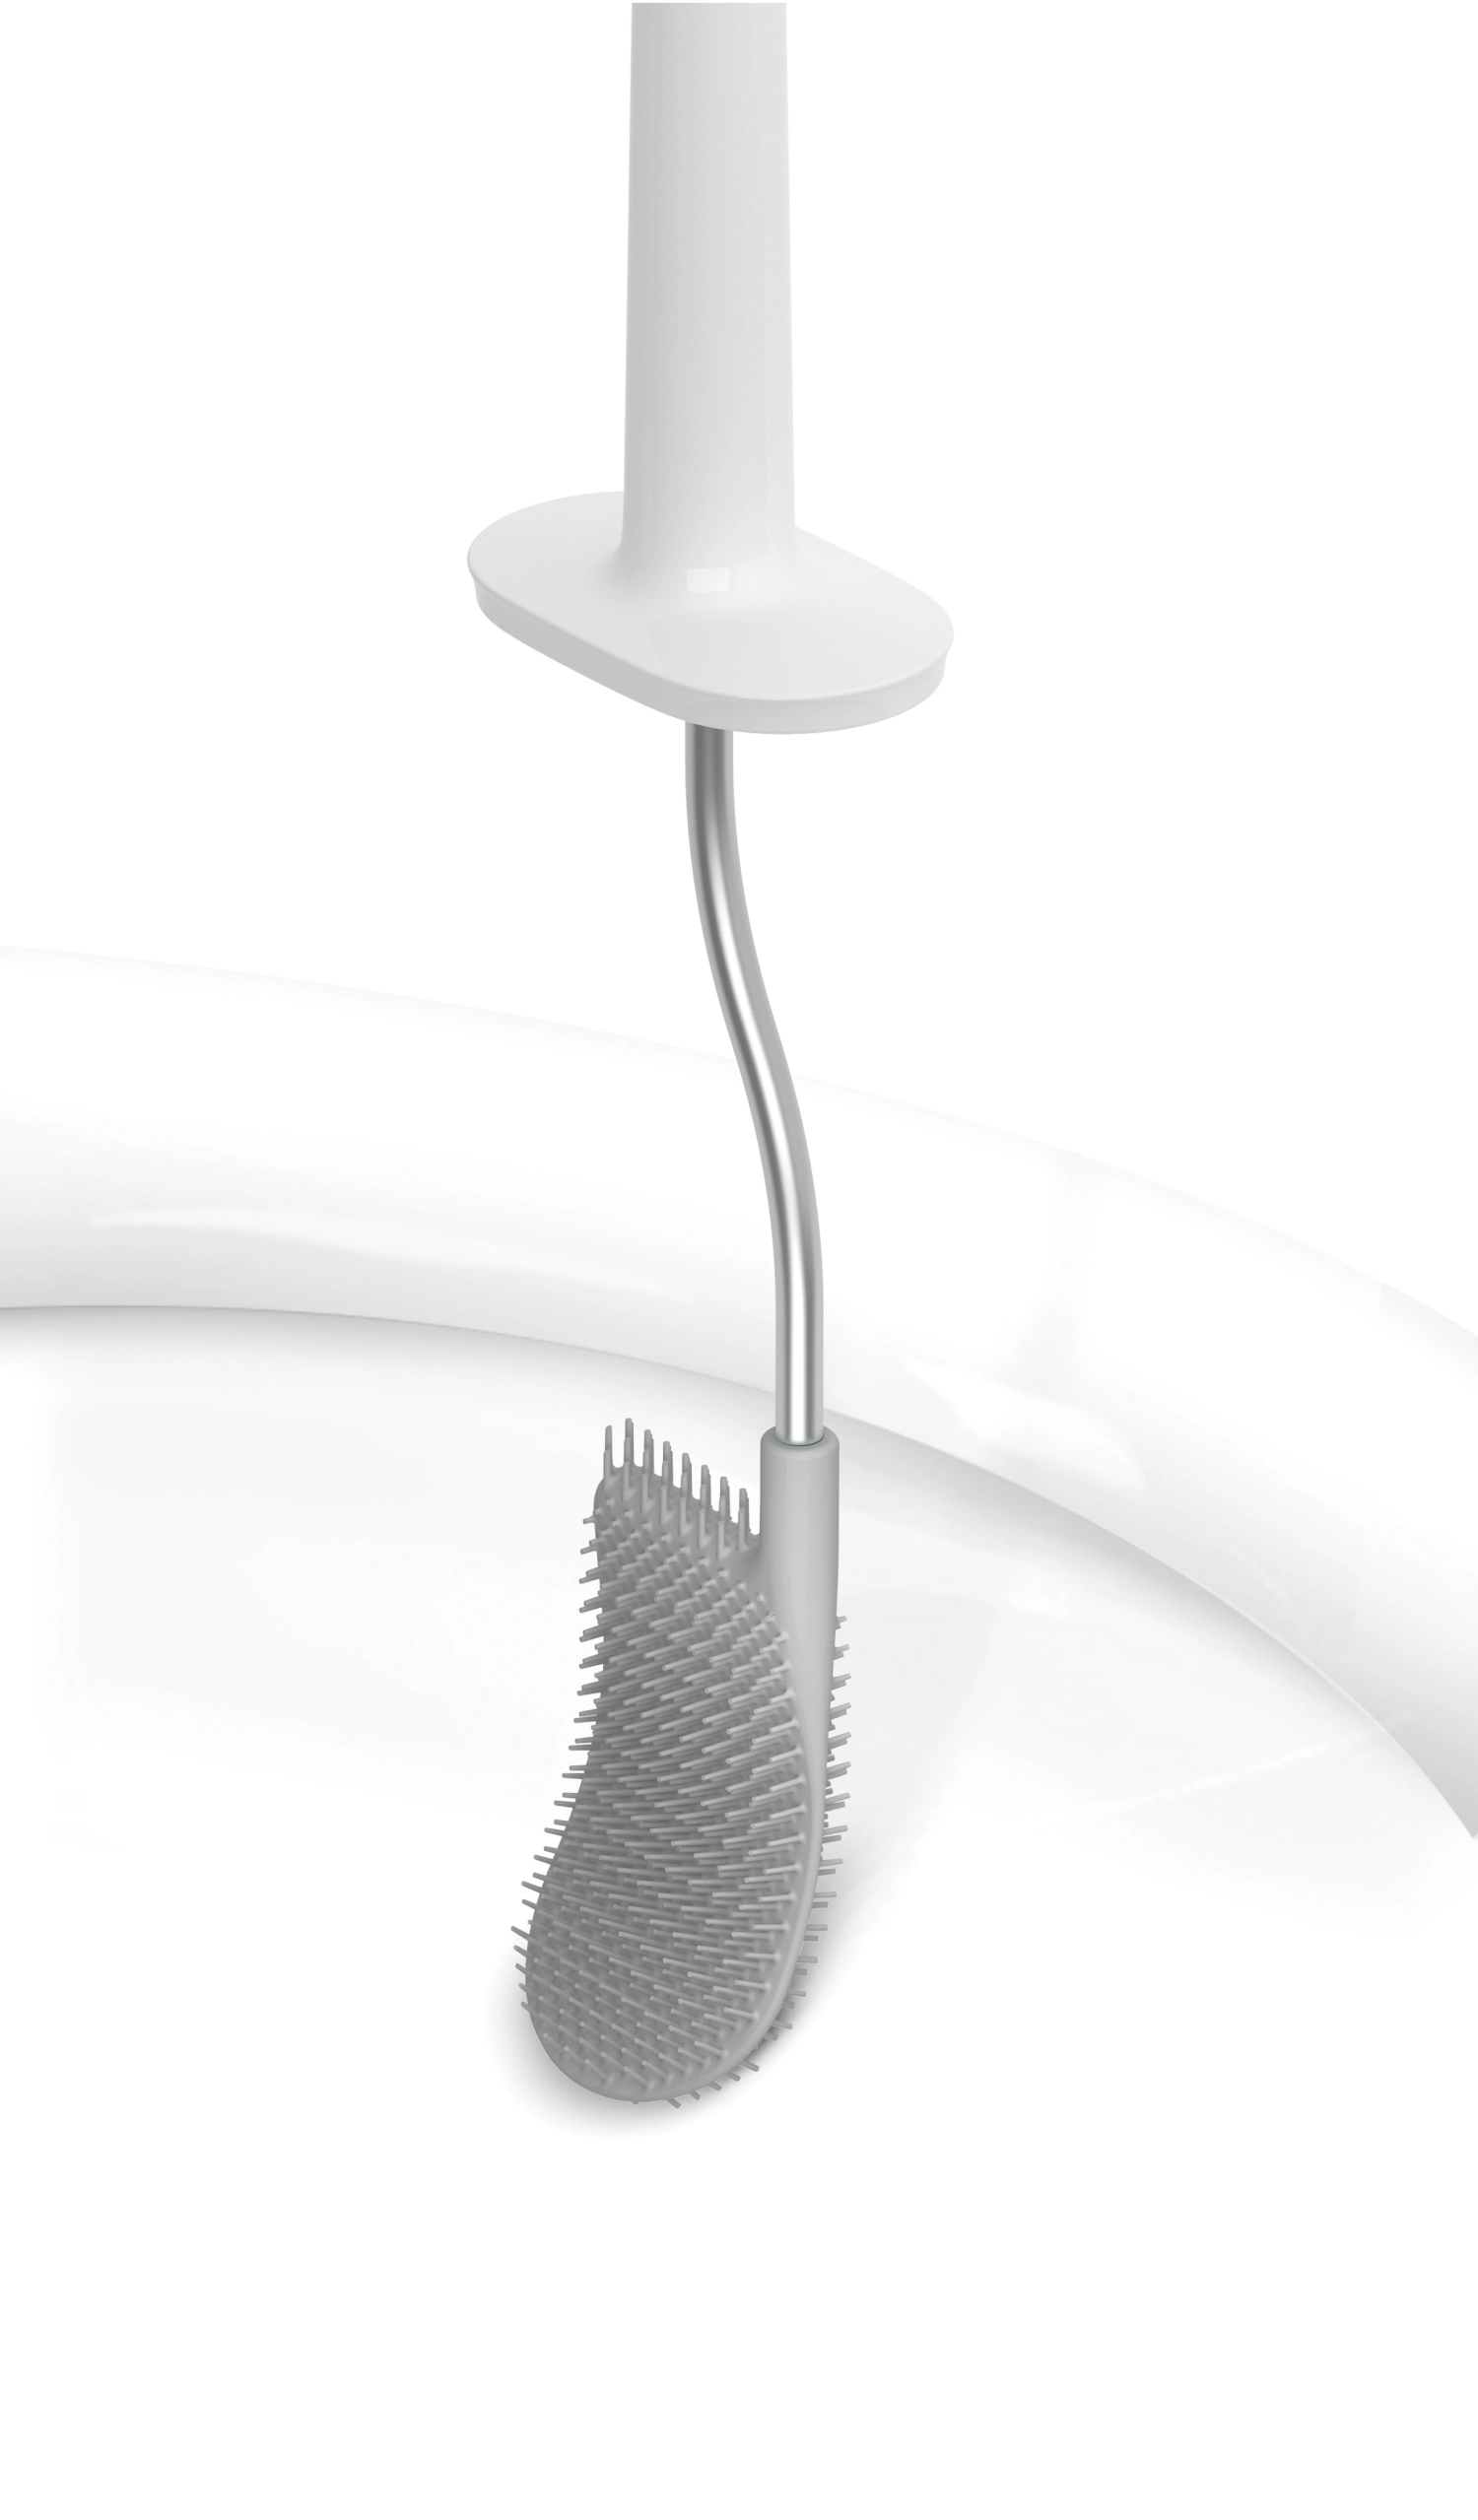 Flex smart brosse à wc blanche grise, 11.4x17.4x42.9 cm